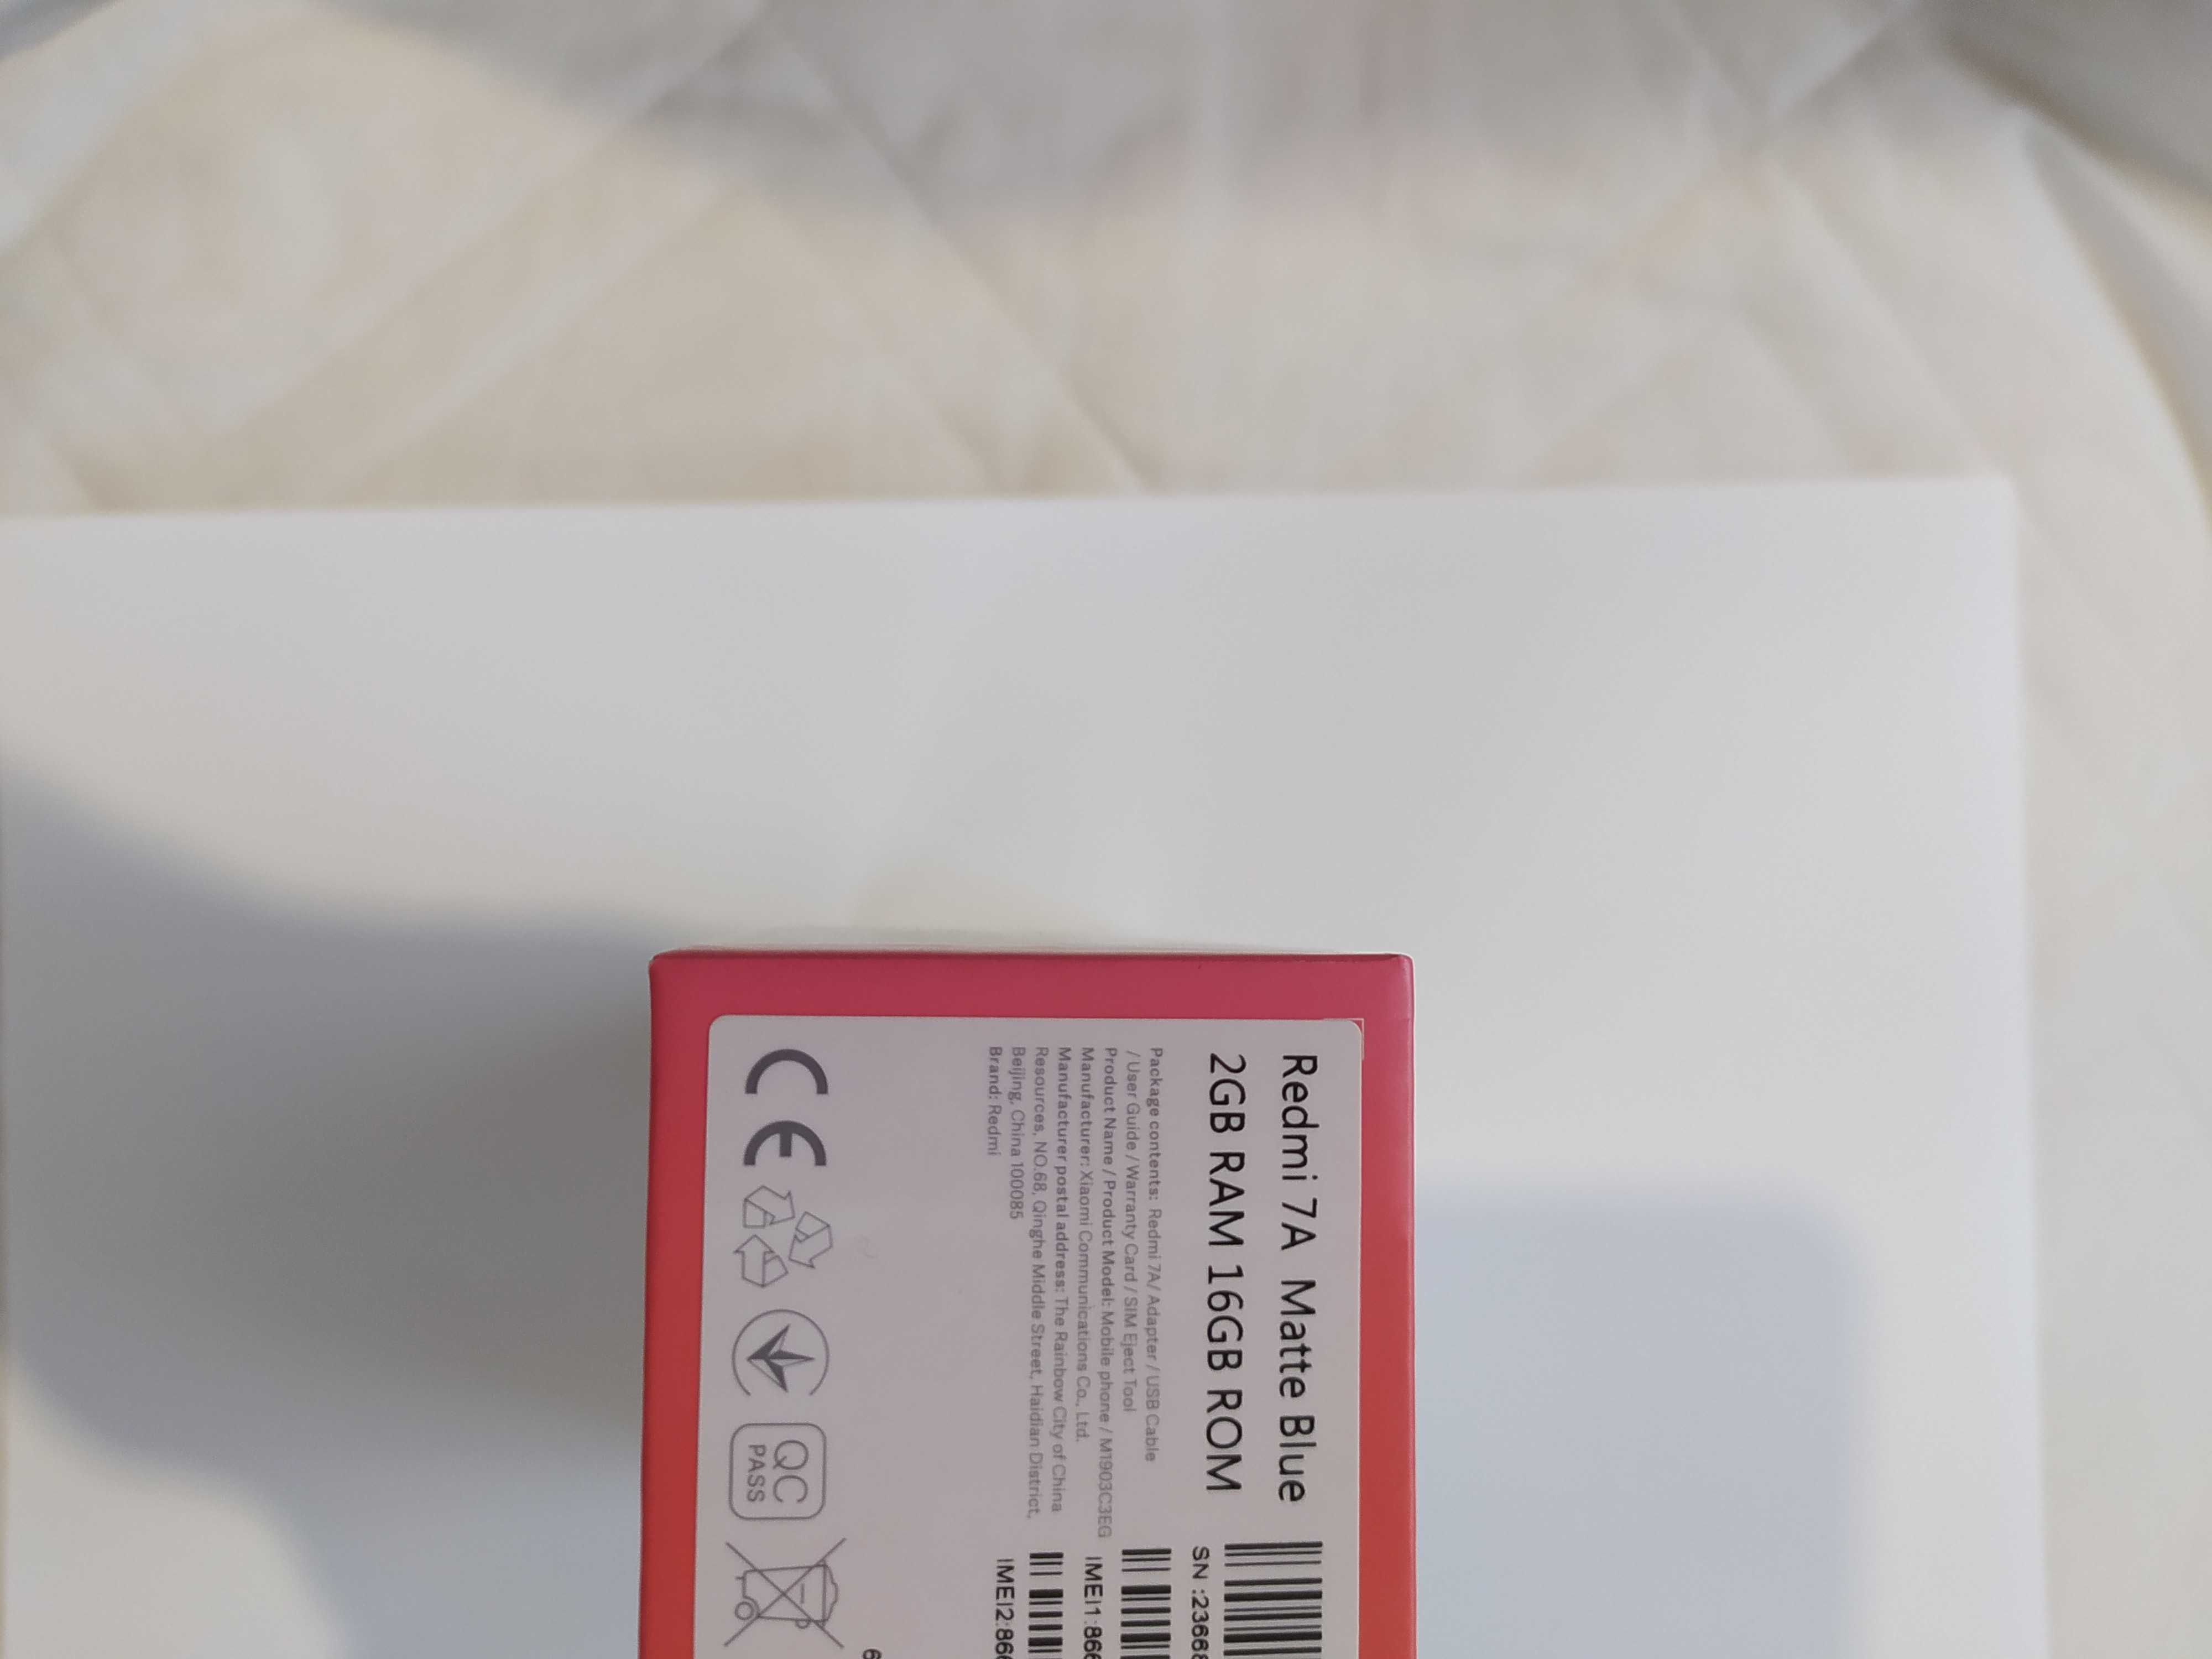 Xiaomi Redmi 7A 2/16GB